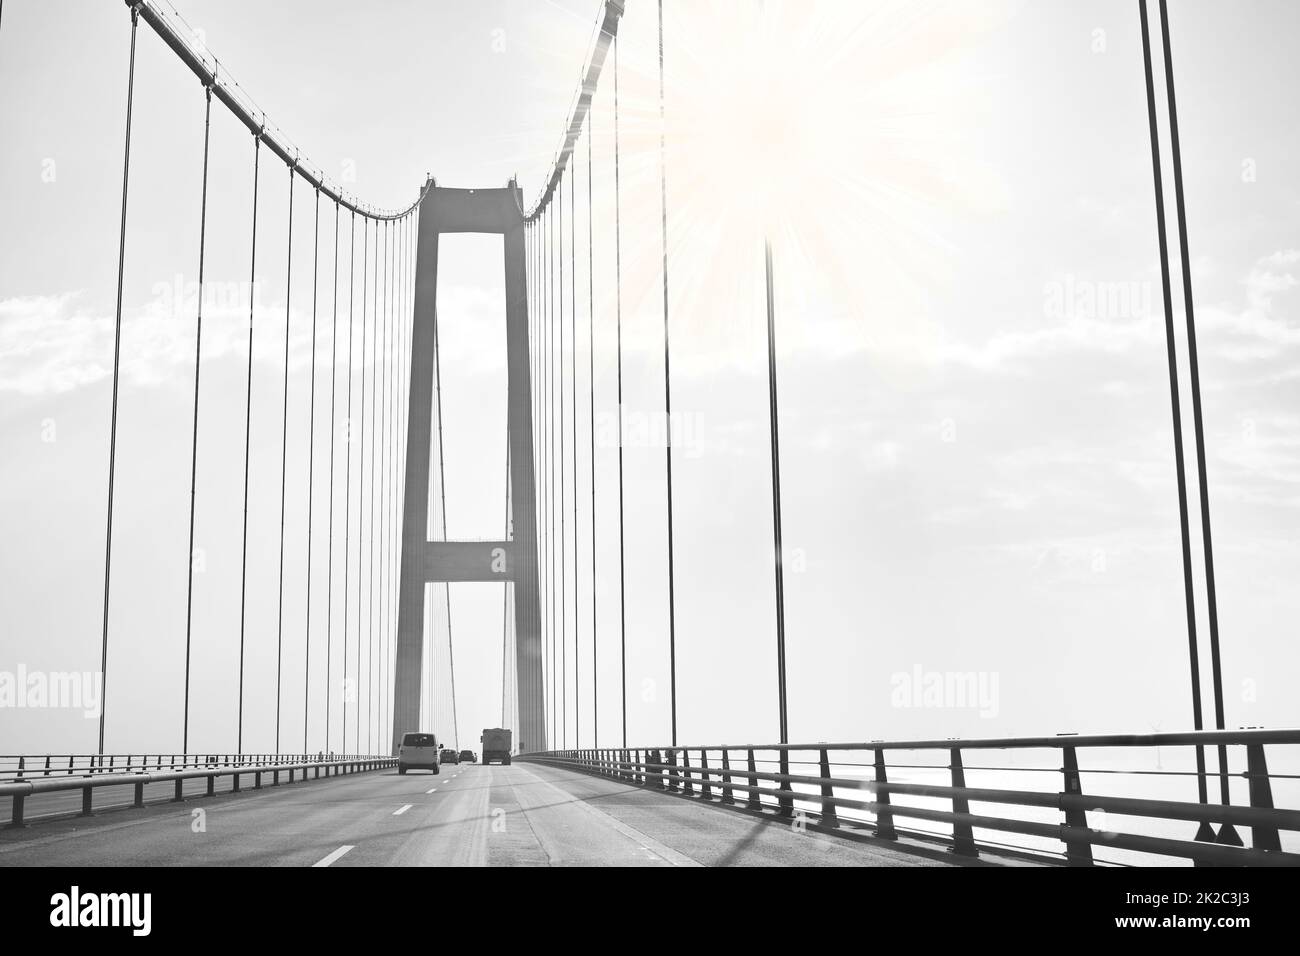 Pont suspendu Storebaelt (ou la Grande ceinture) au Danemark. Voitures roulant le long du pont suspendu de la Grande ceinture au Danemark. Banque D'Images